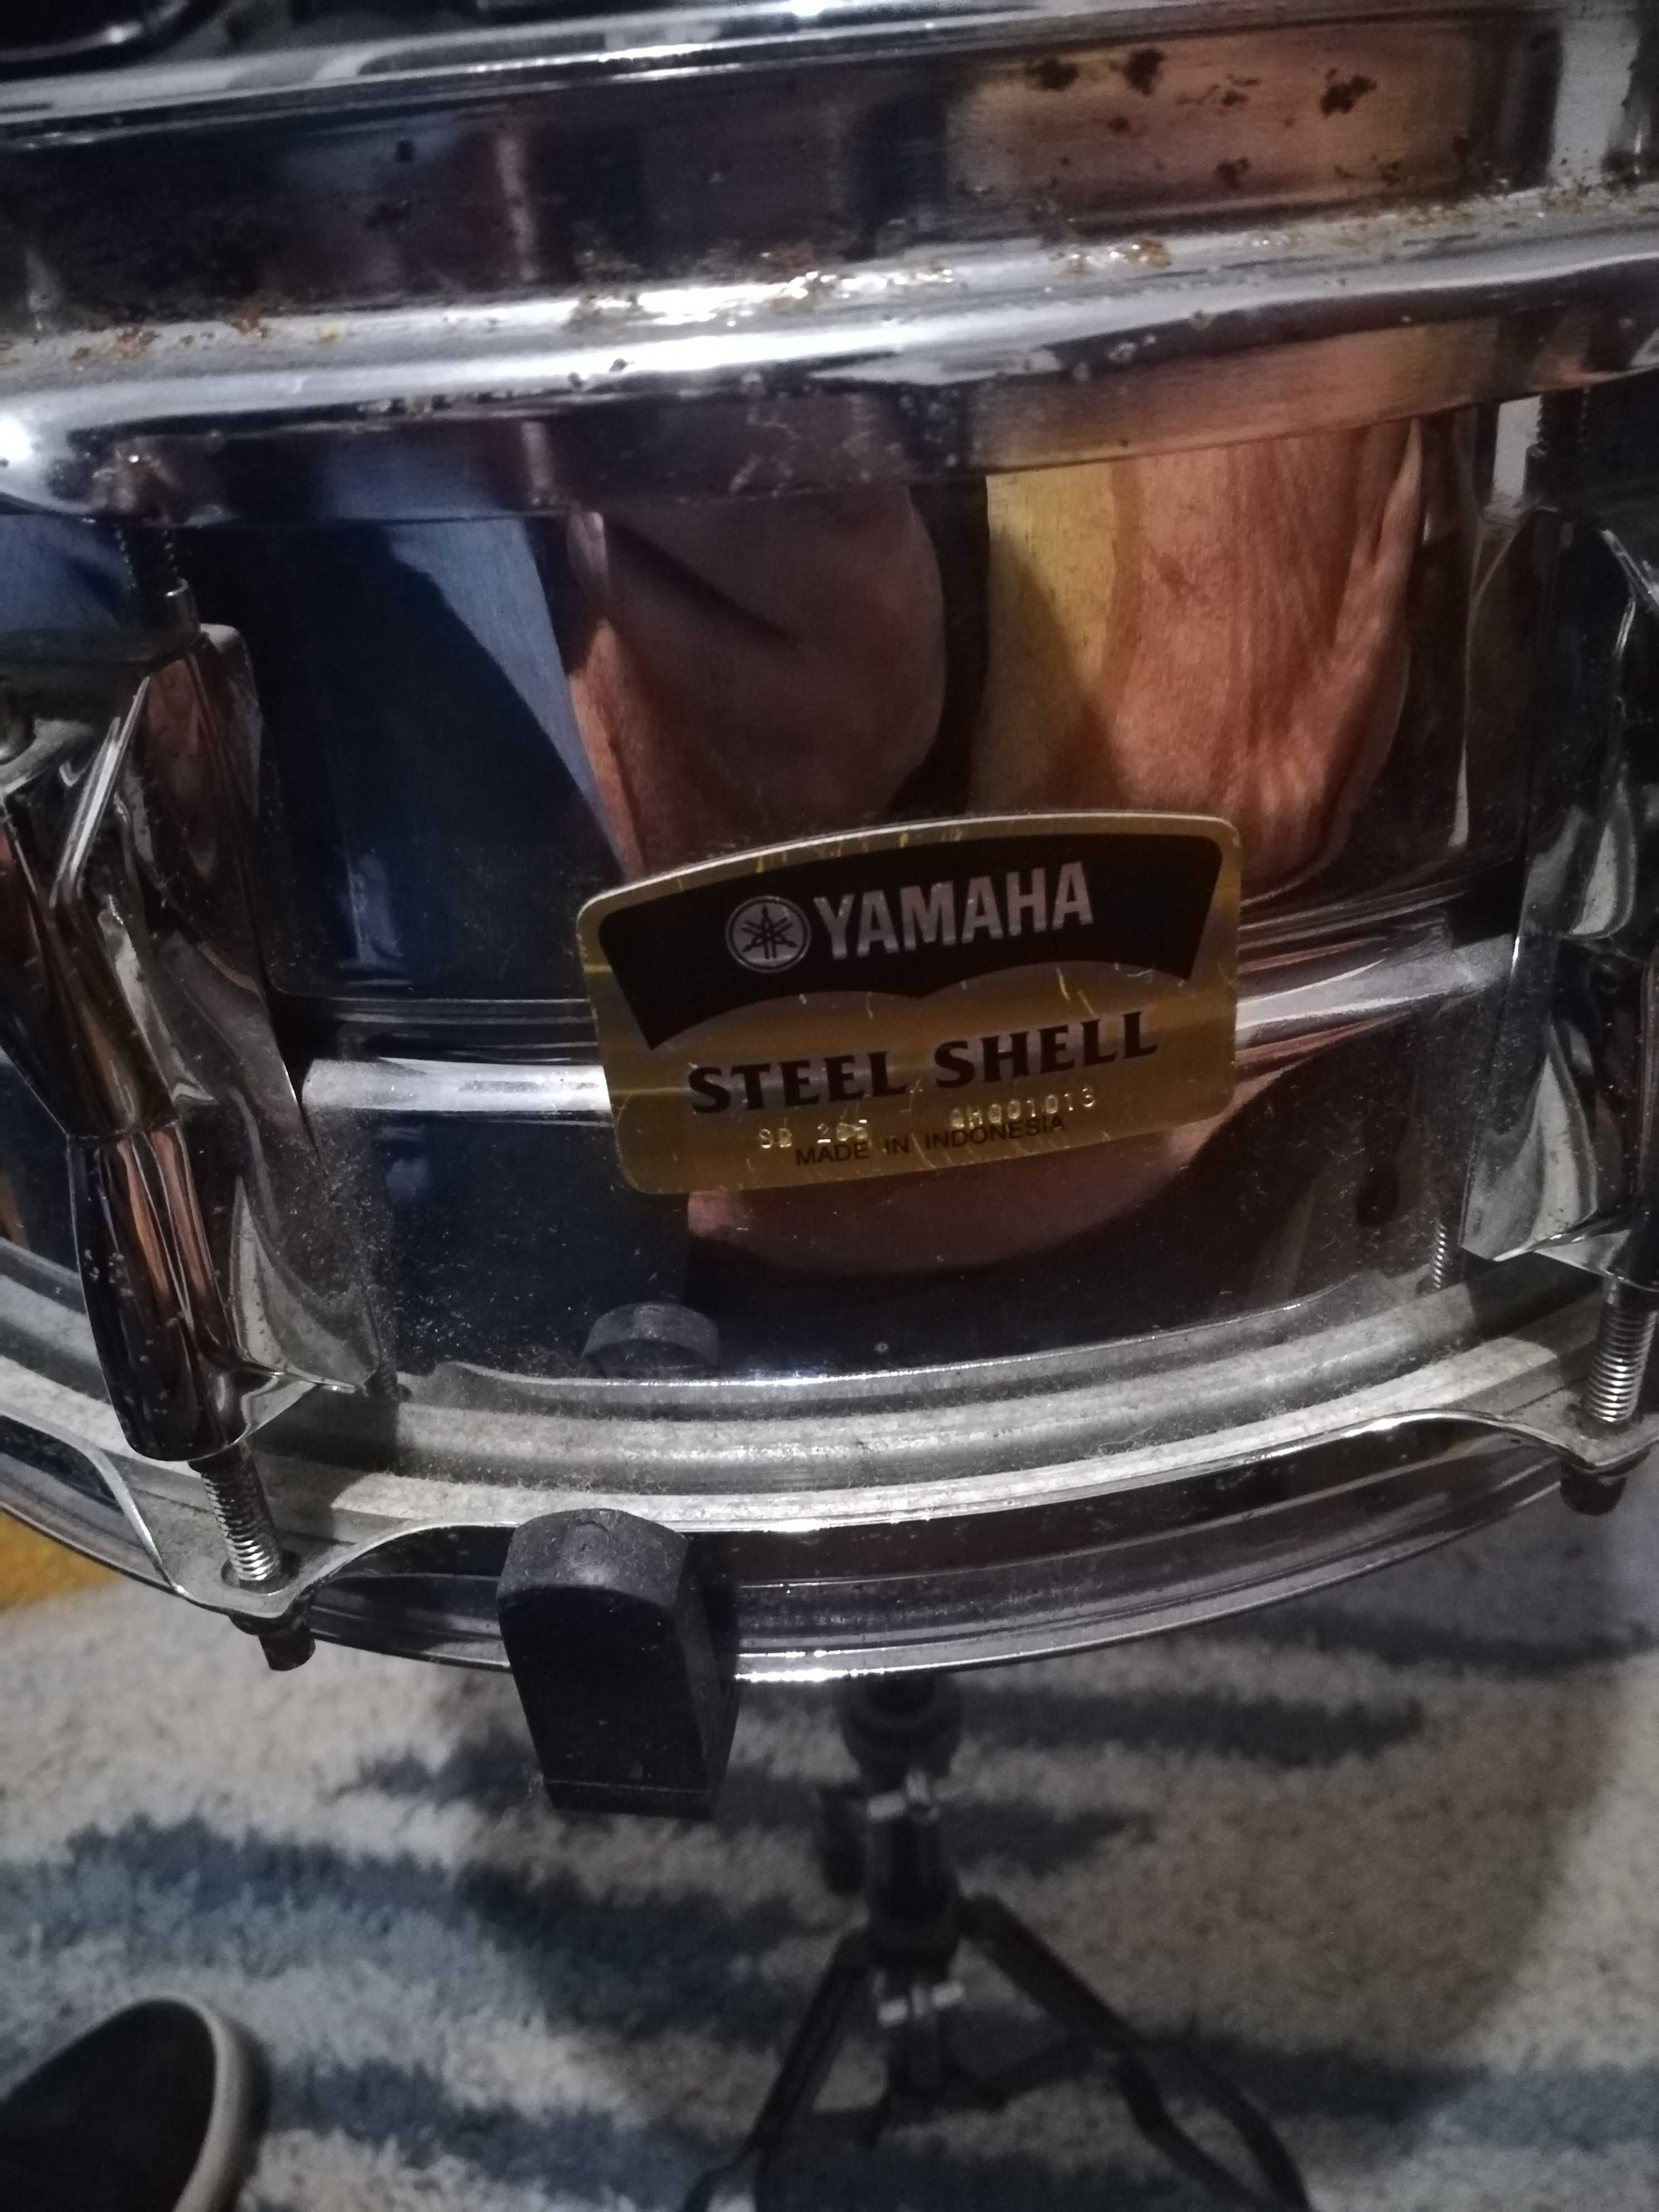 Tarola Yamaha Steel shell